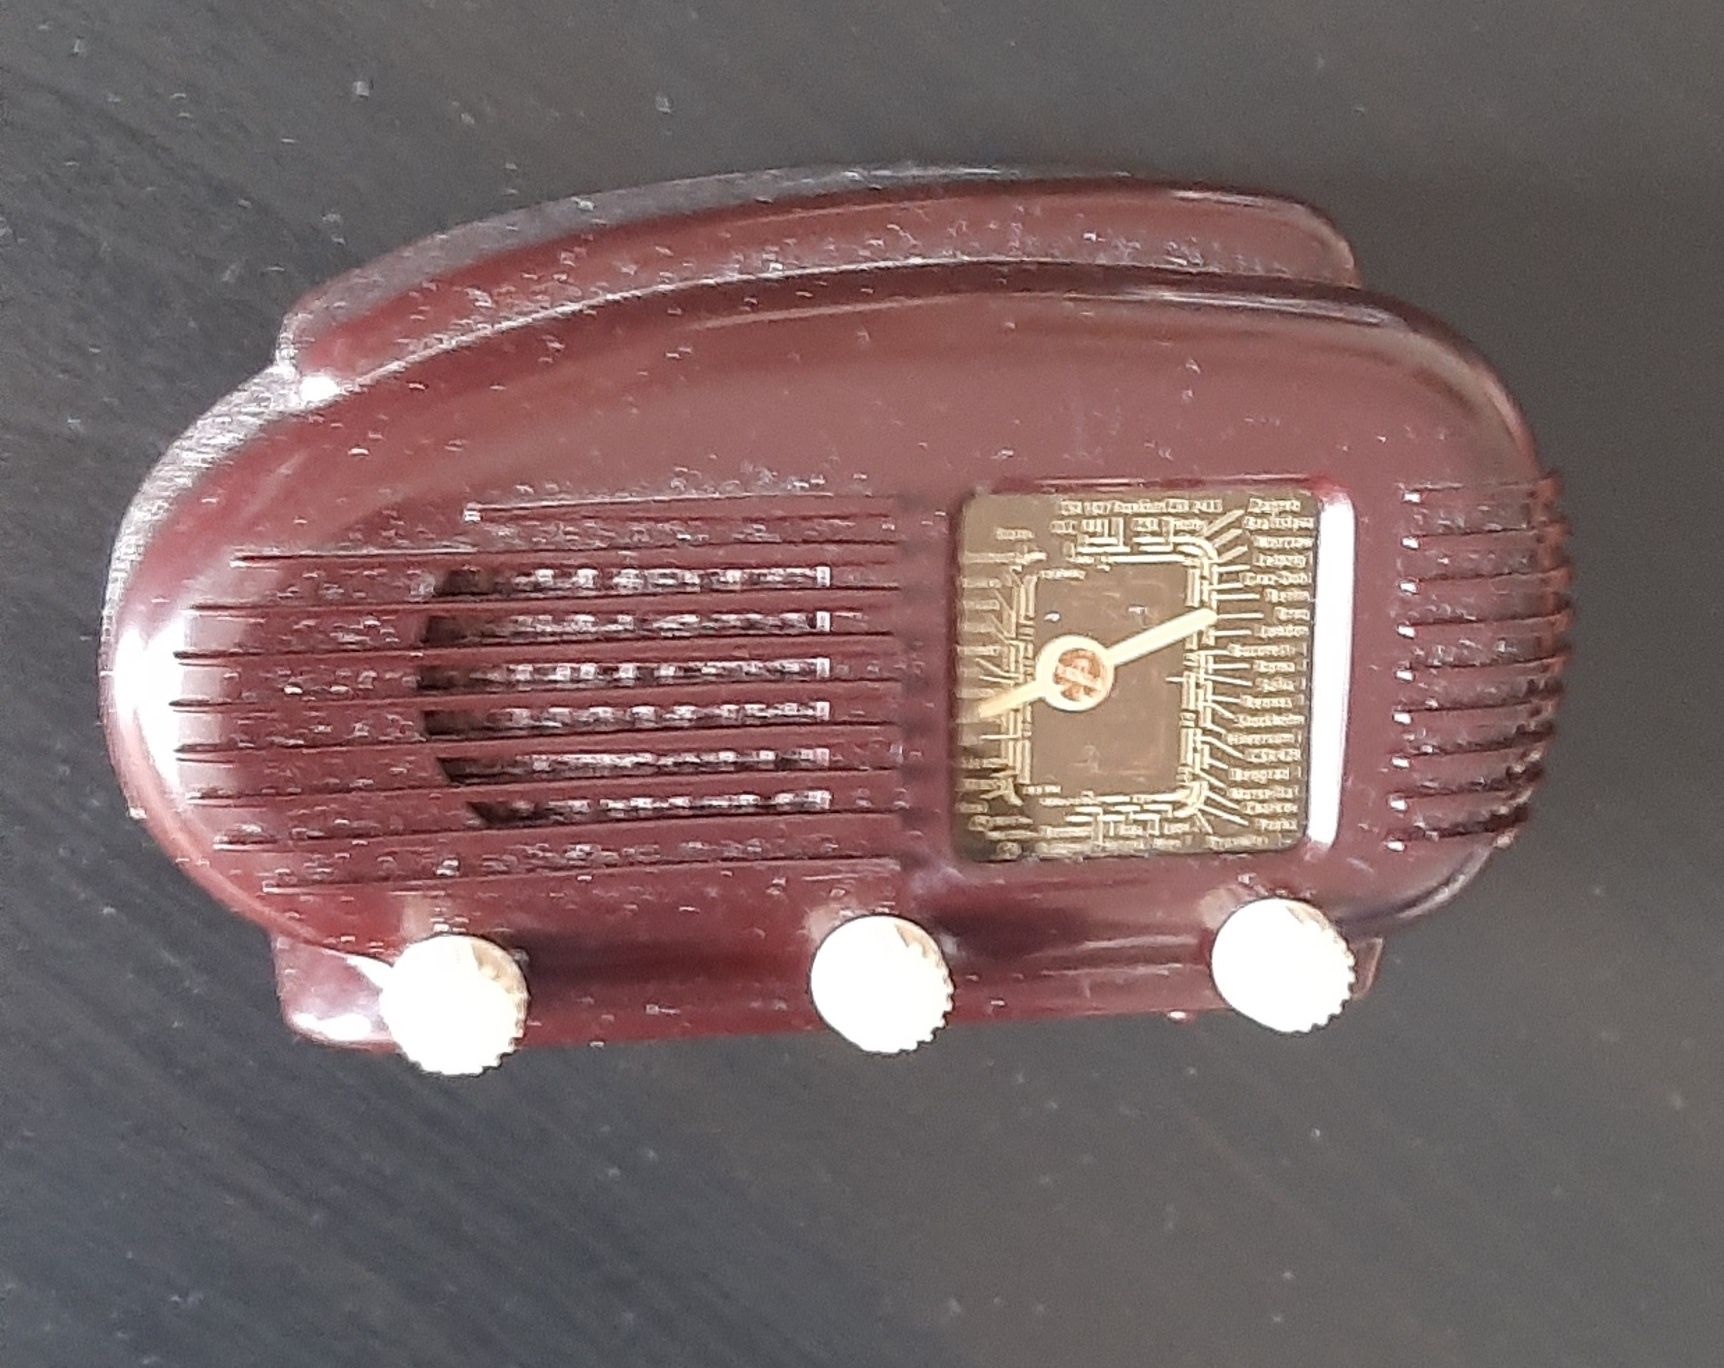 Miniaturas de radios antigos